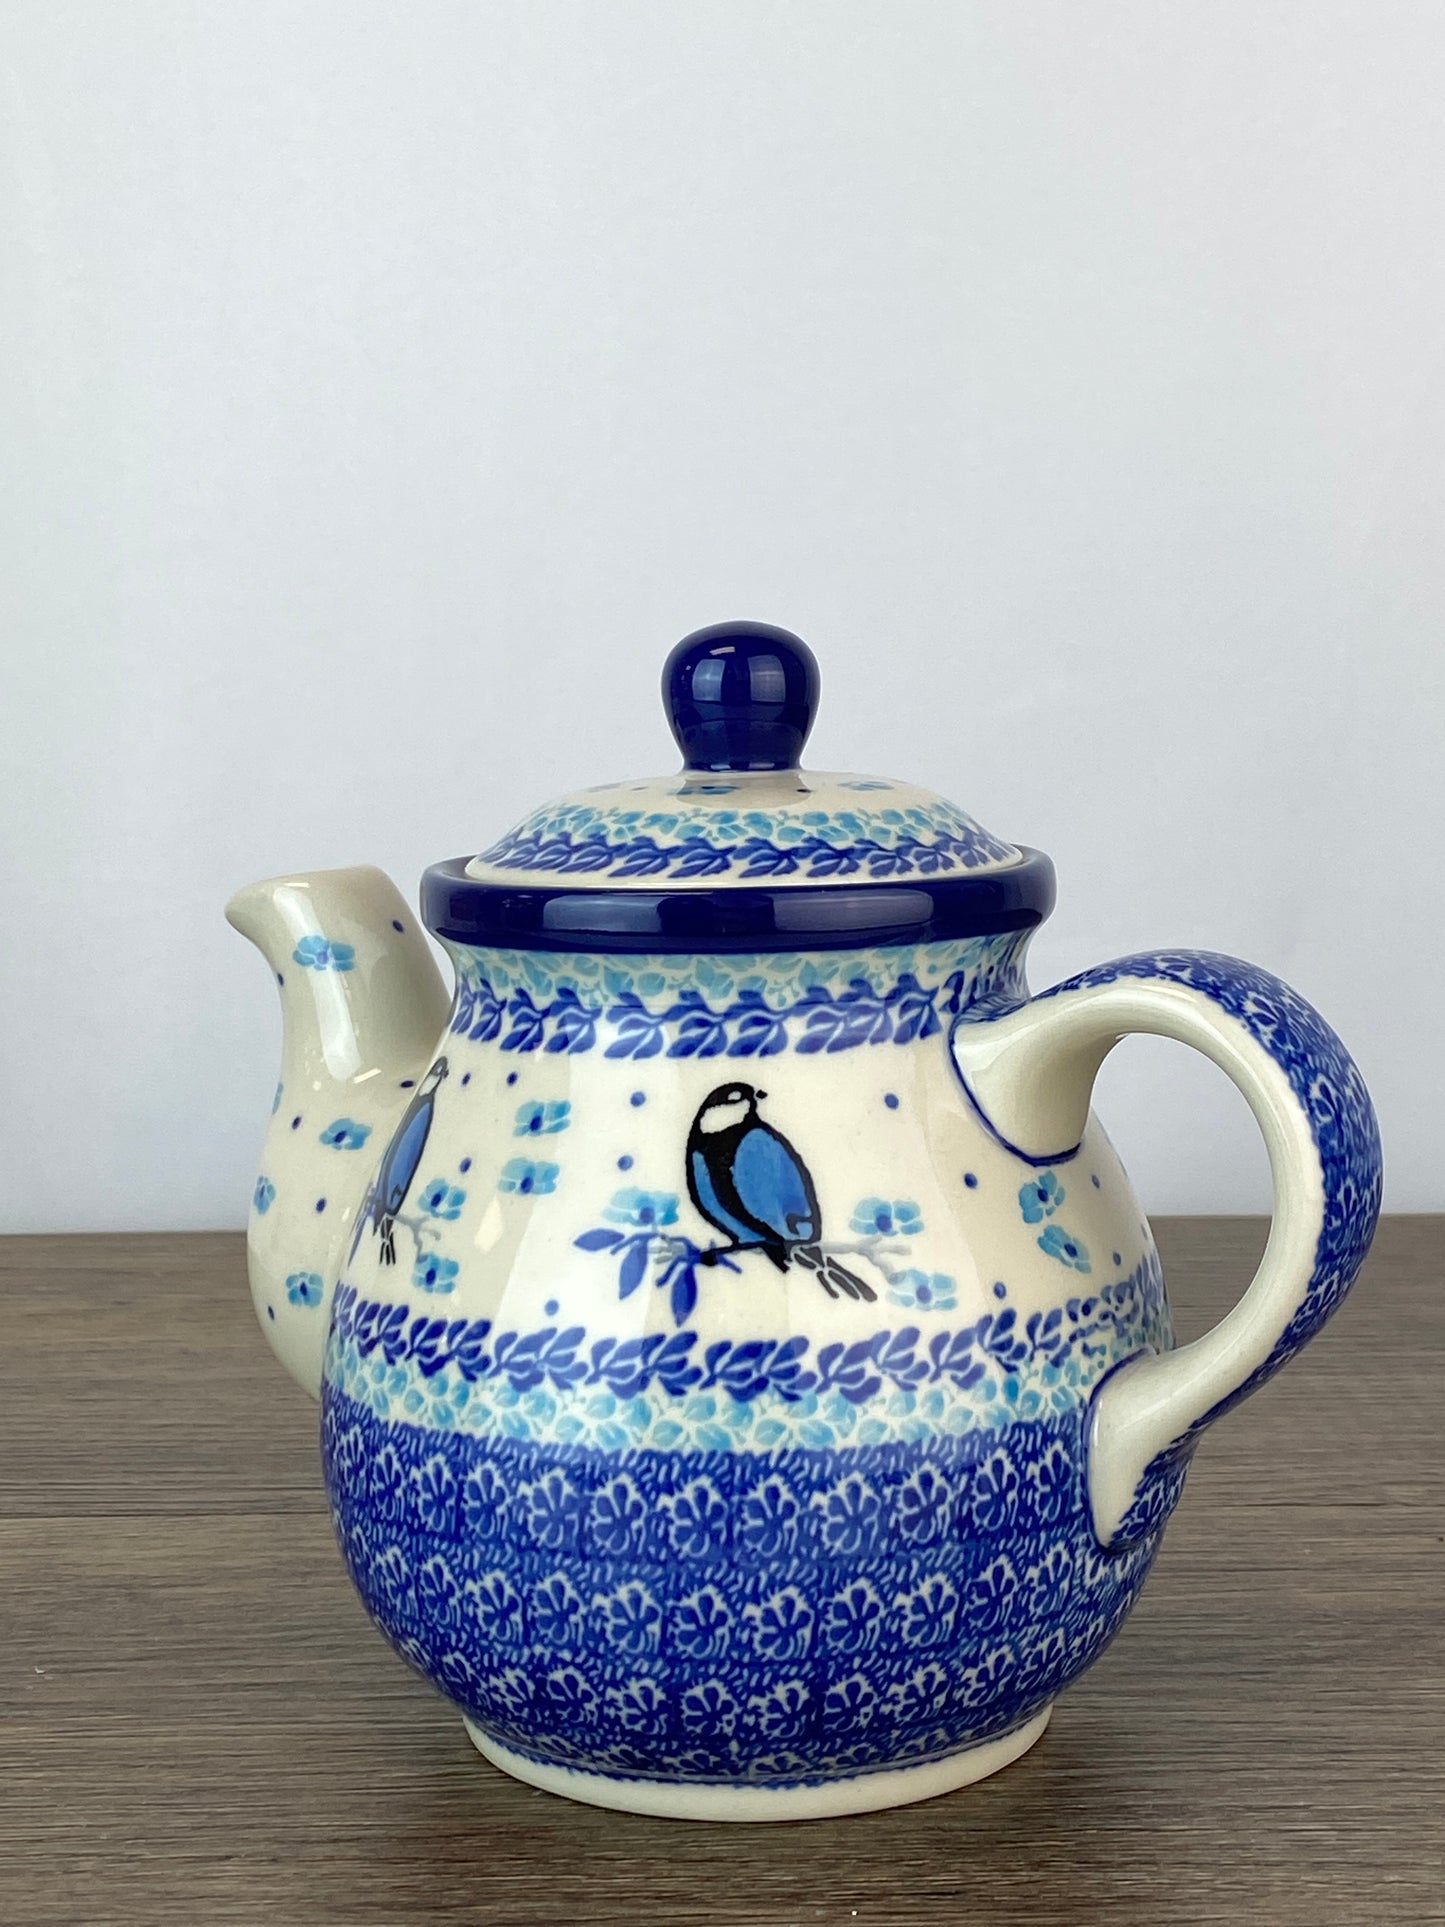 SALE 3 Cup Teapot - Shape 119 - Pattern 2679